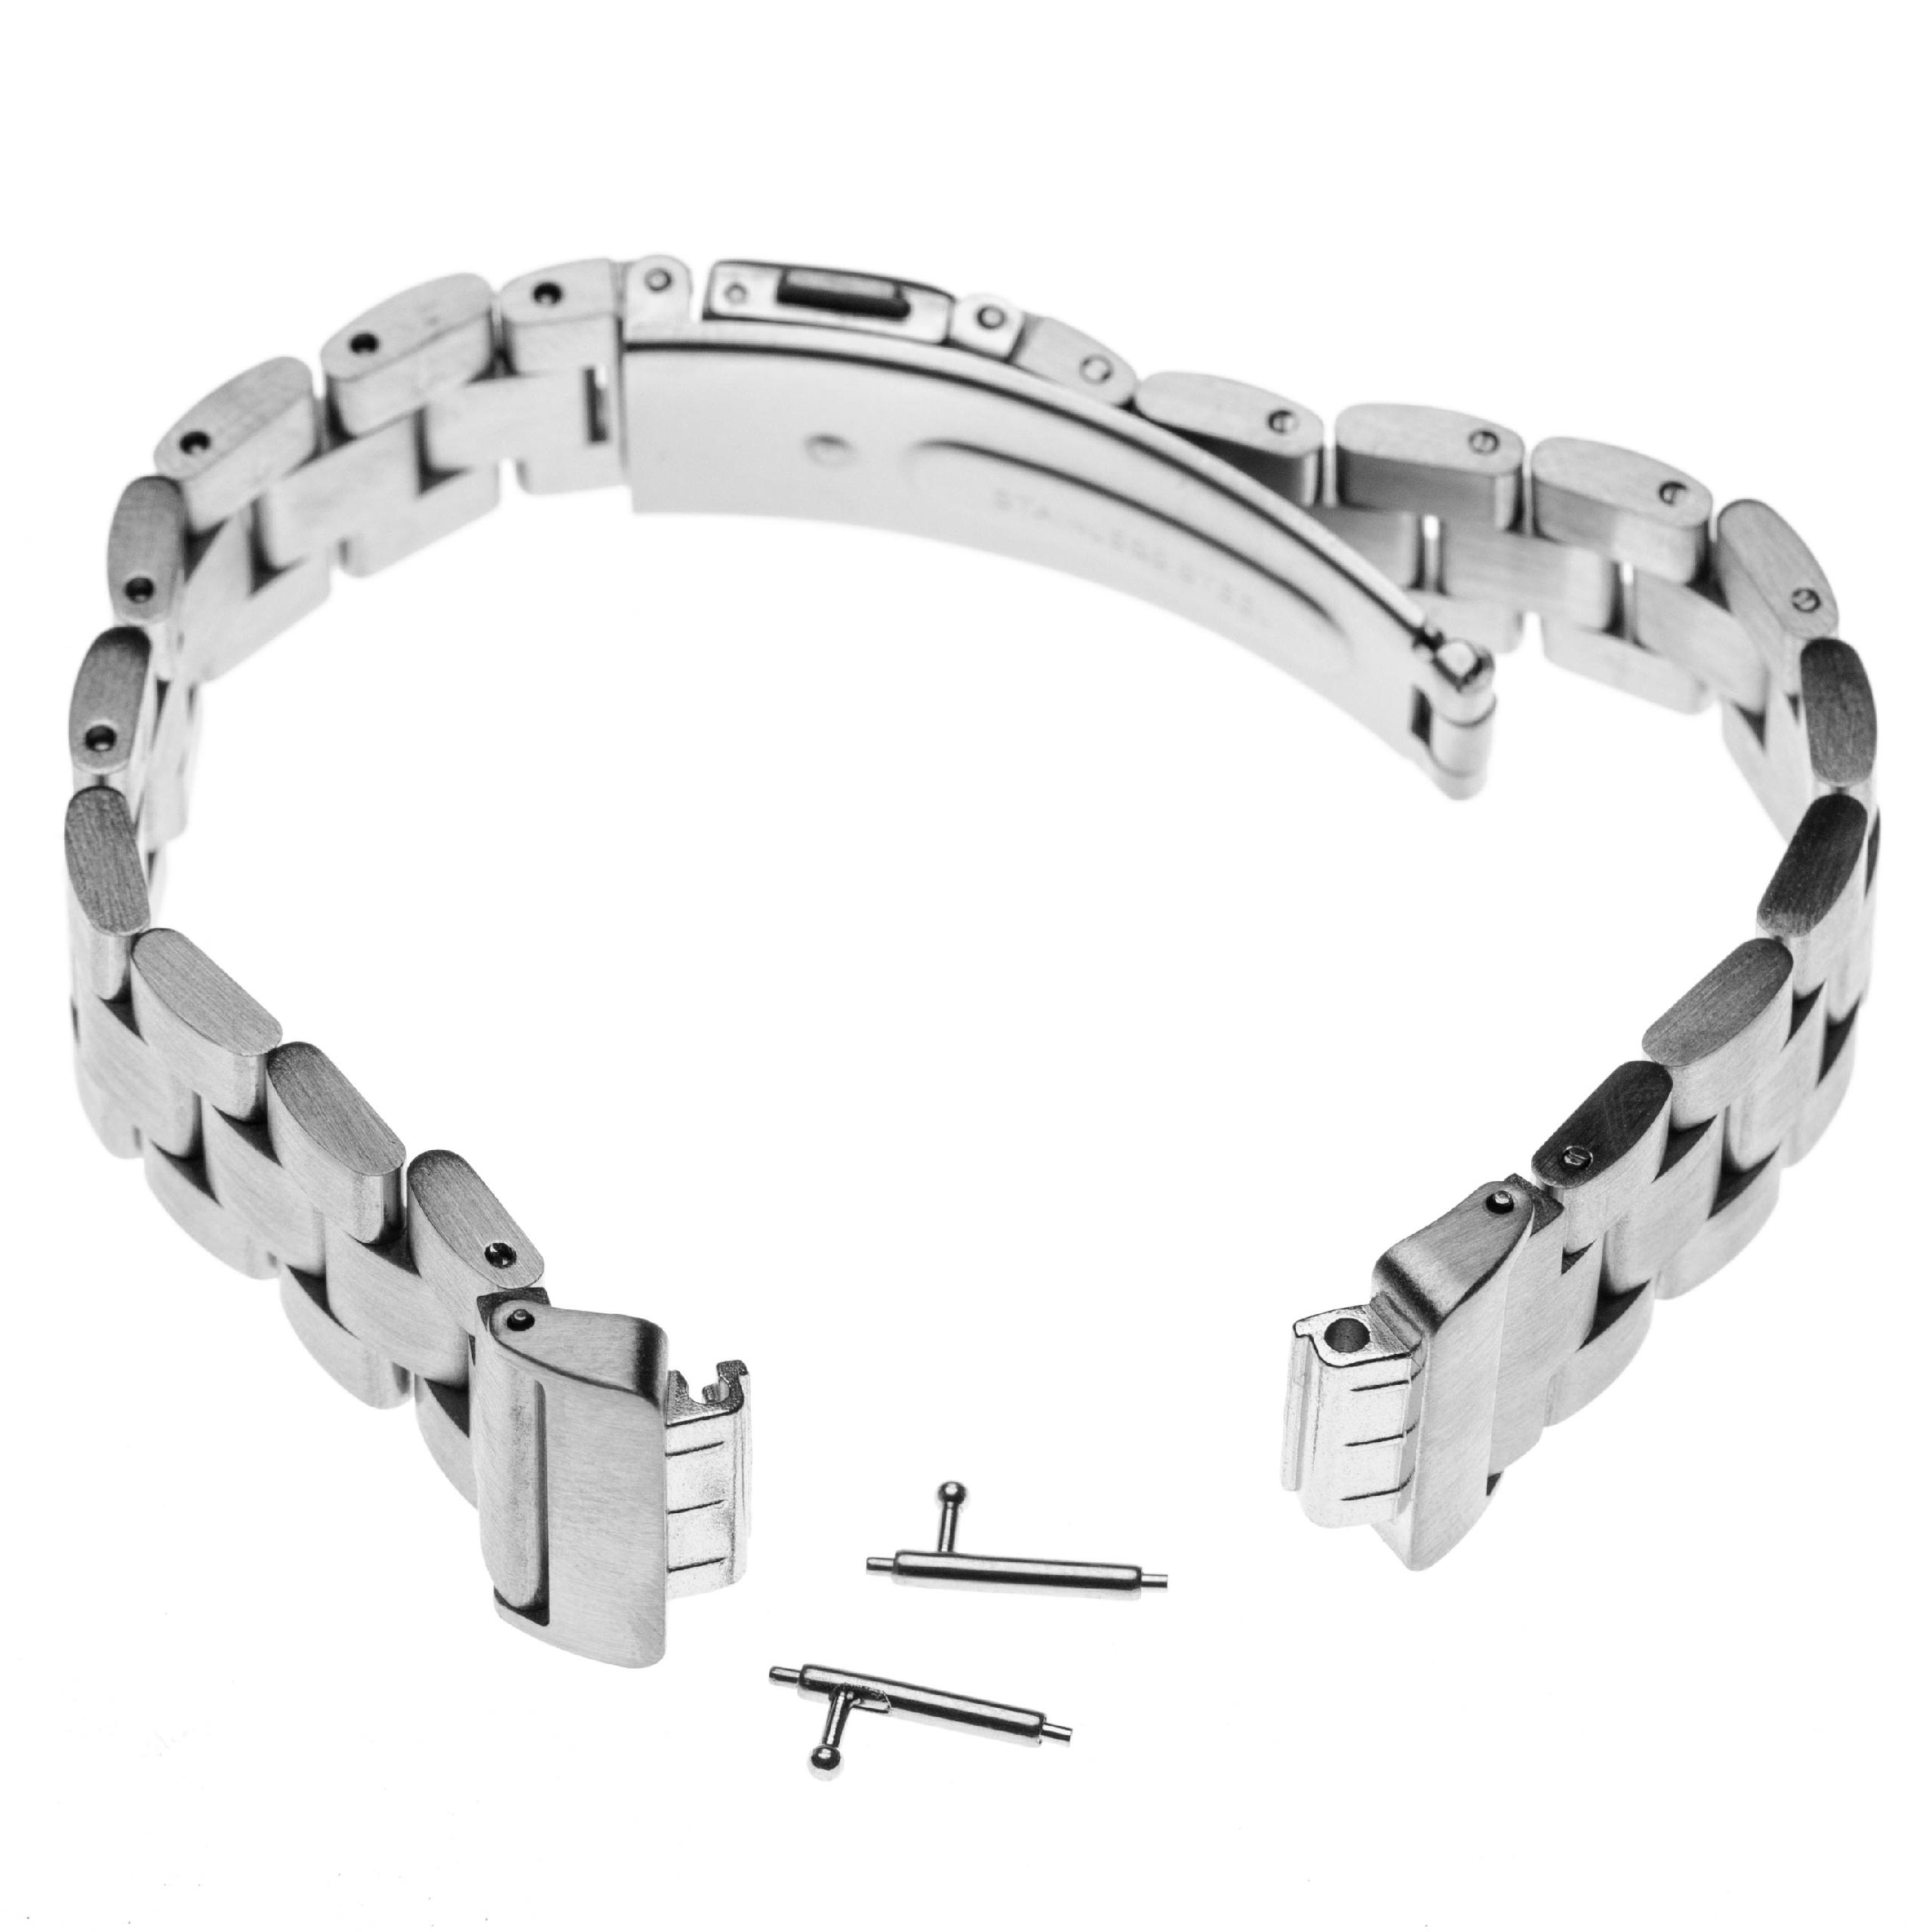 Bracelet pour montre intelligente Fitbit - 18 cm de long, 14mm de large, acier inoxydable, argenté